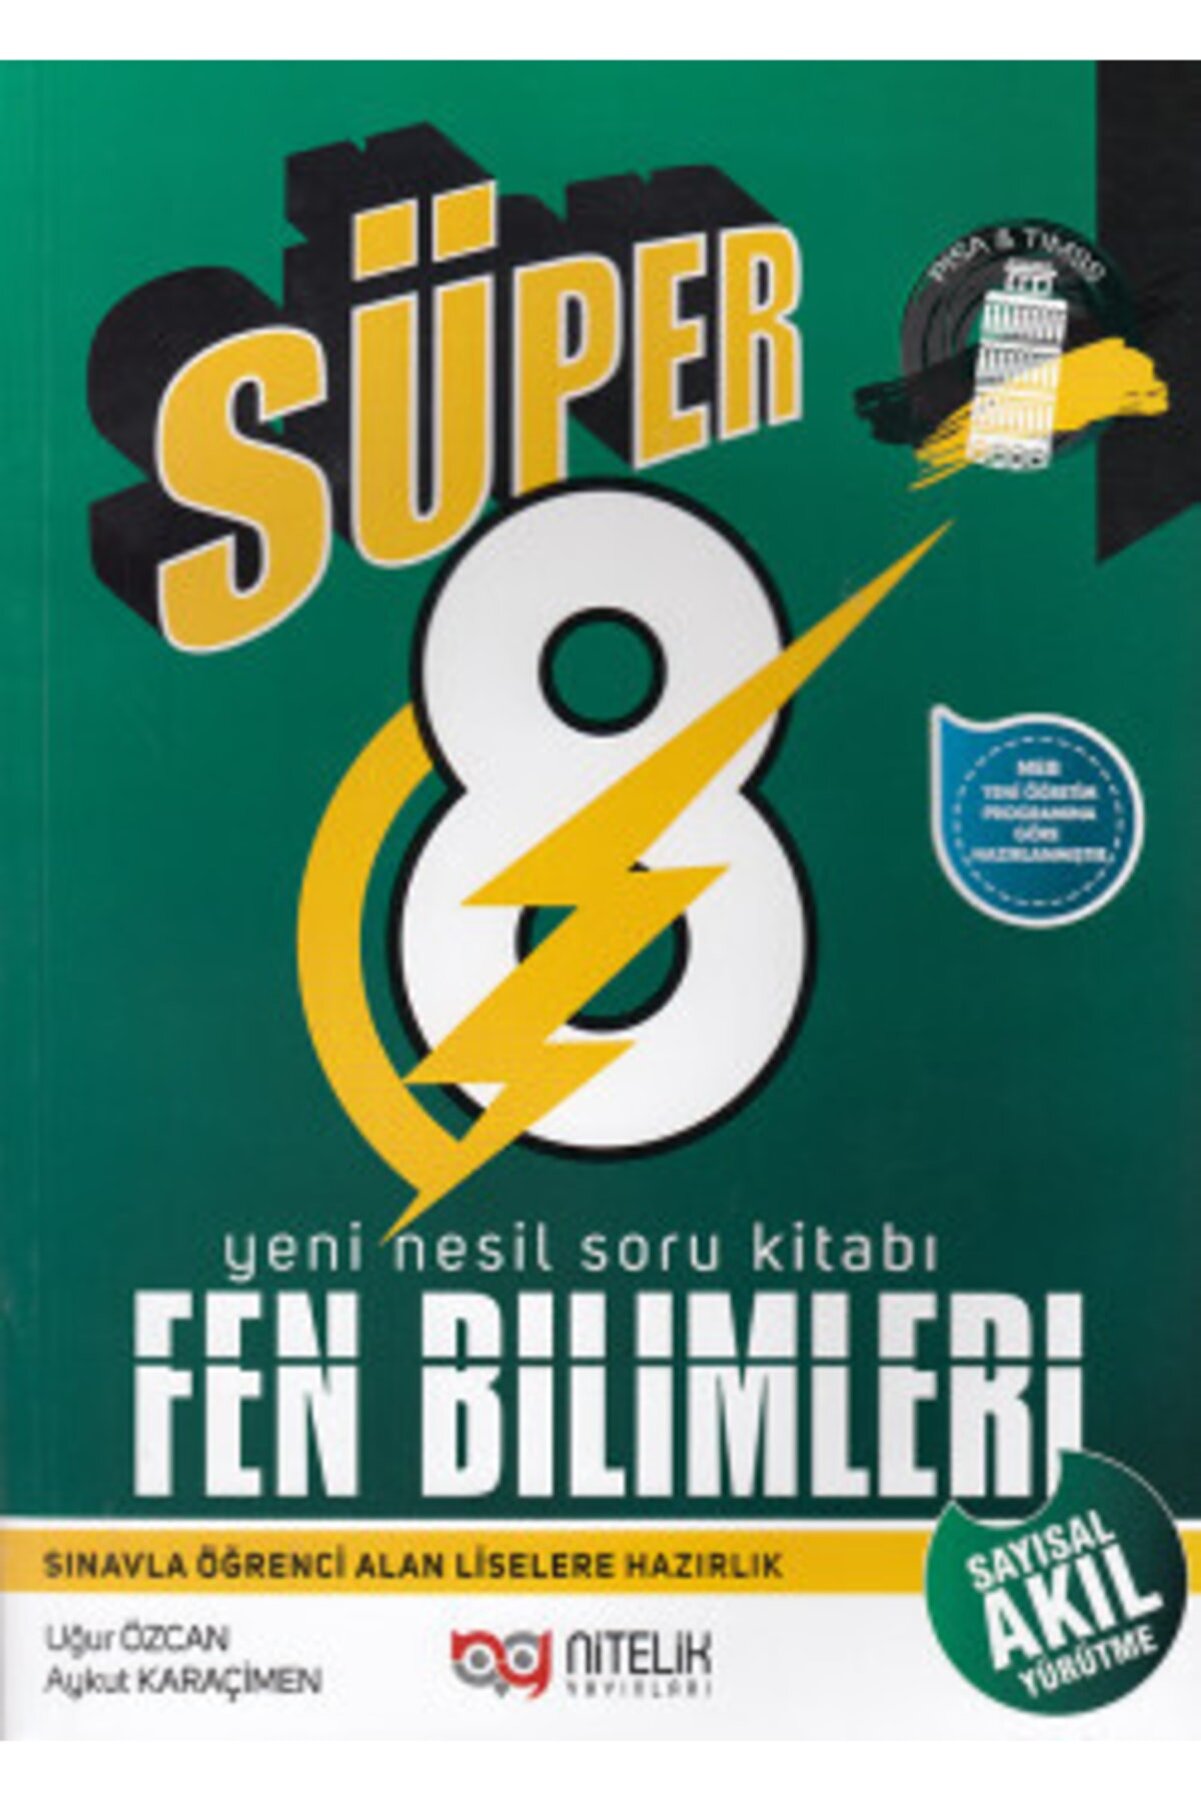 Nitelik Yayınları 8.sınıf Yeni Nesil Süper Fen Bilimleri Soru Kitabı 2019 Aykut Karaçimen  Uğur Özcan